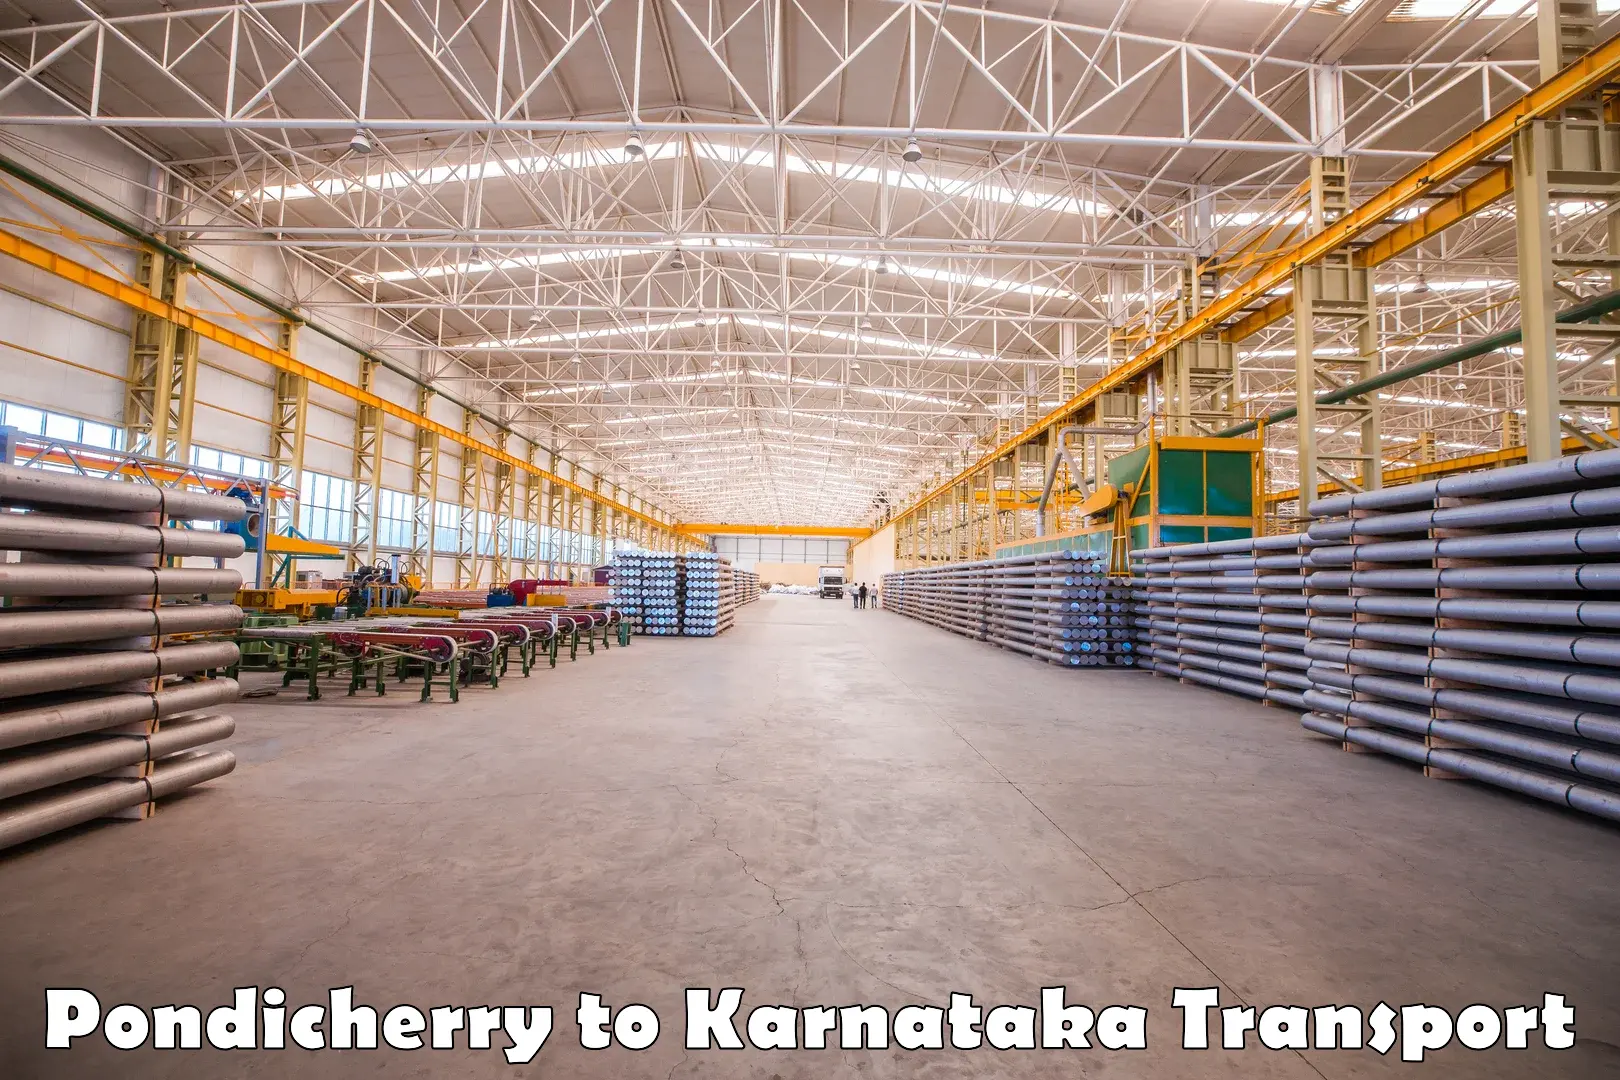 Domestic transport services Pondicherry to Karnataka